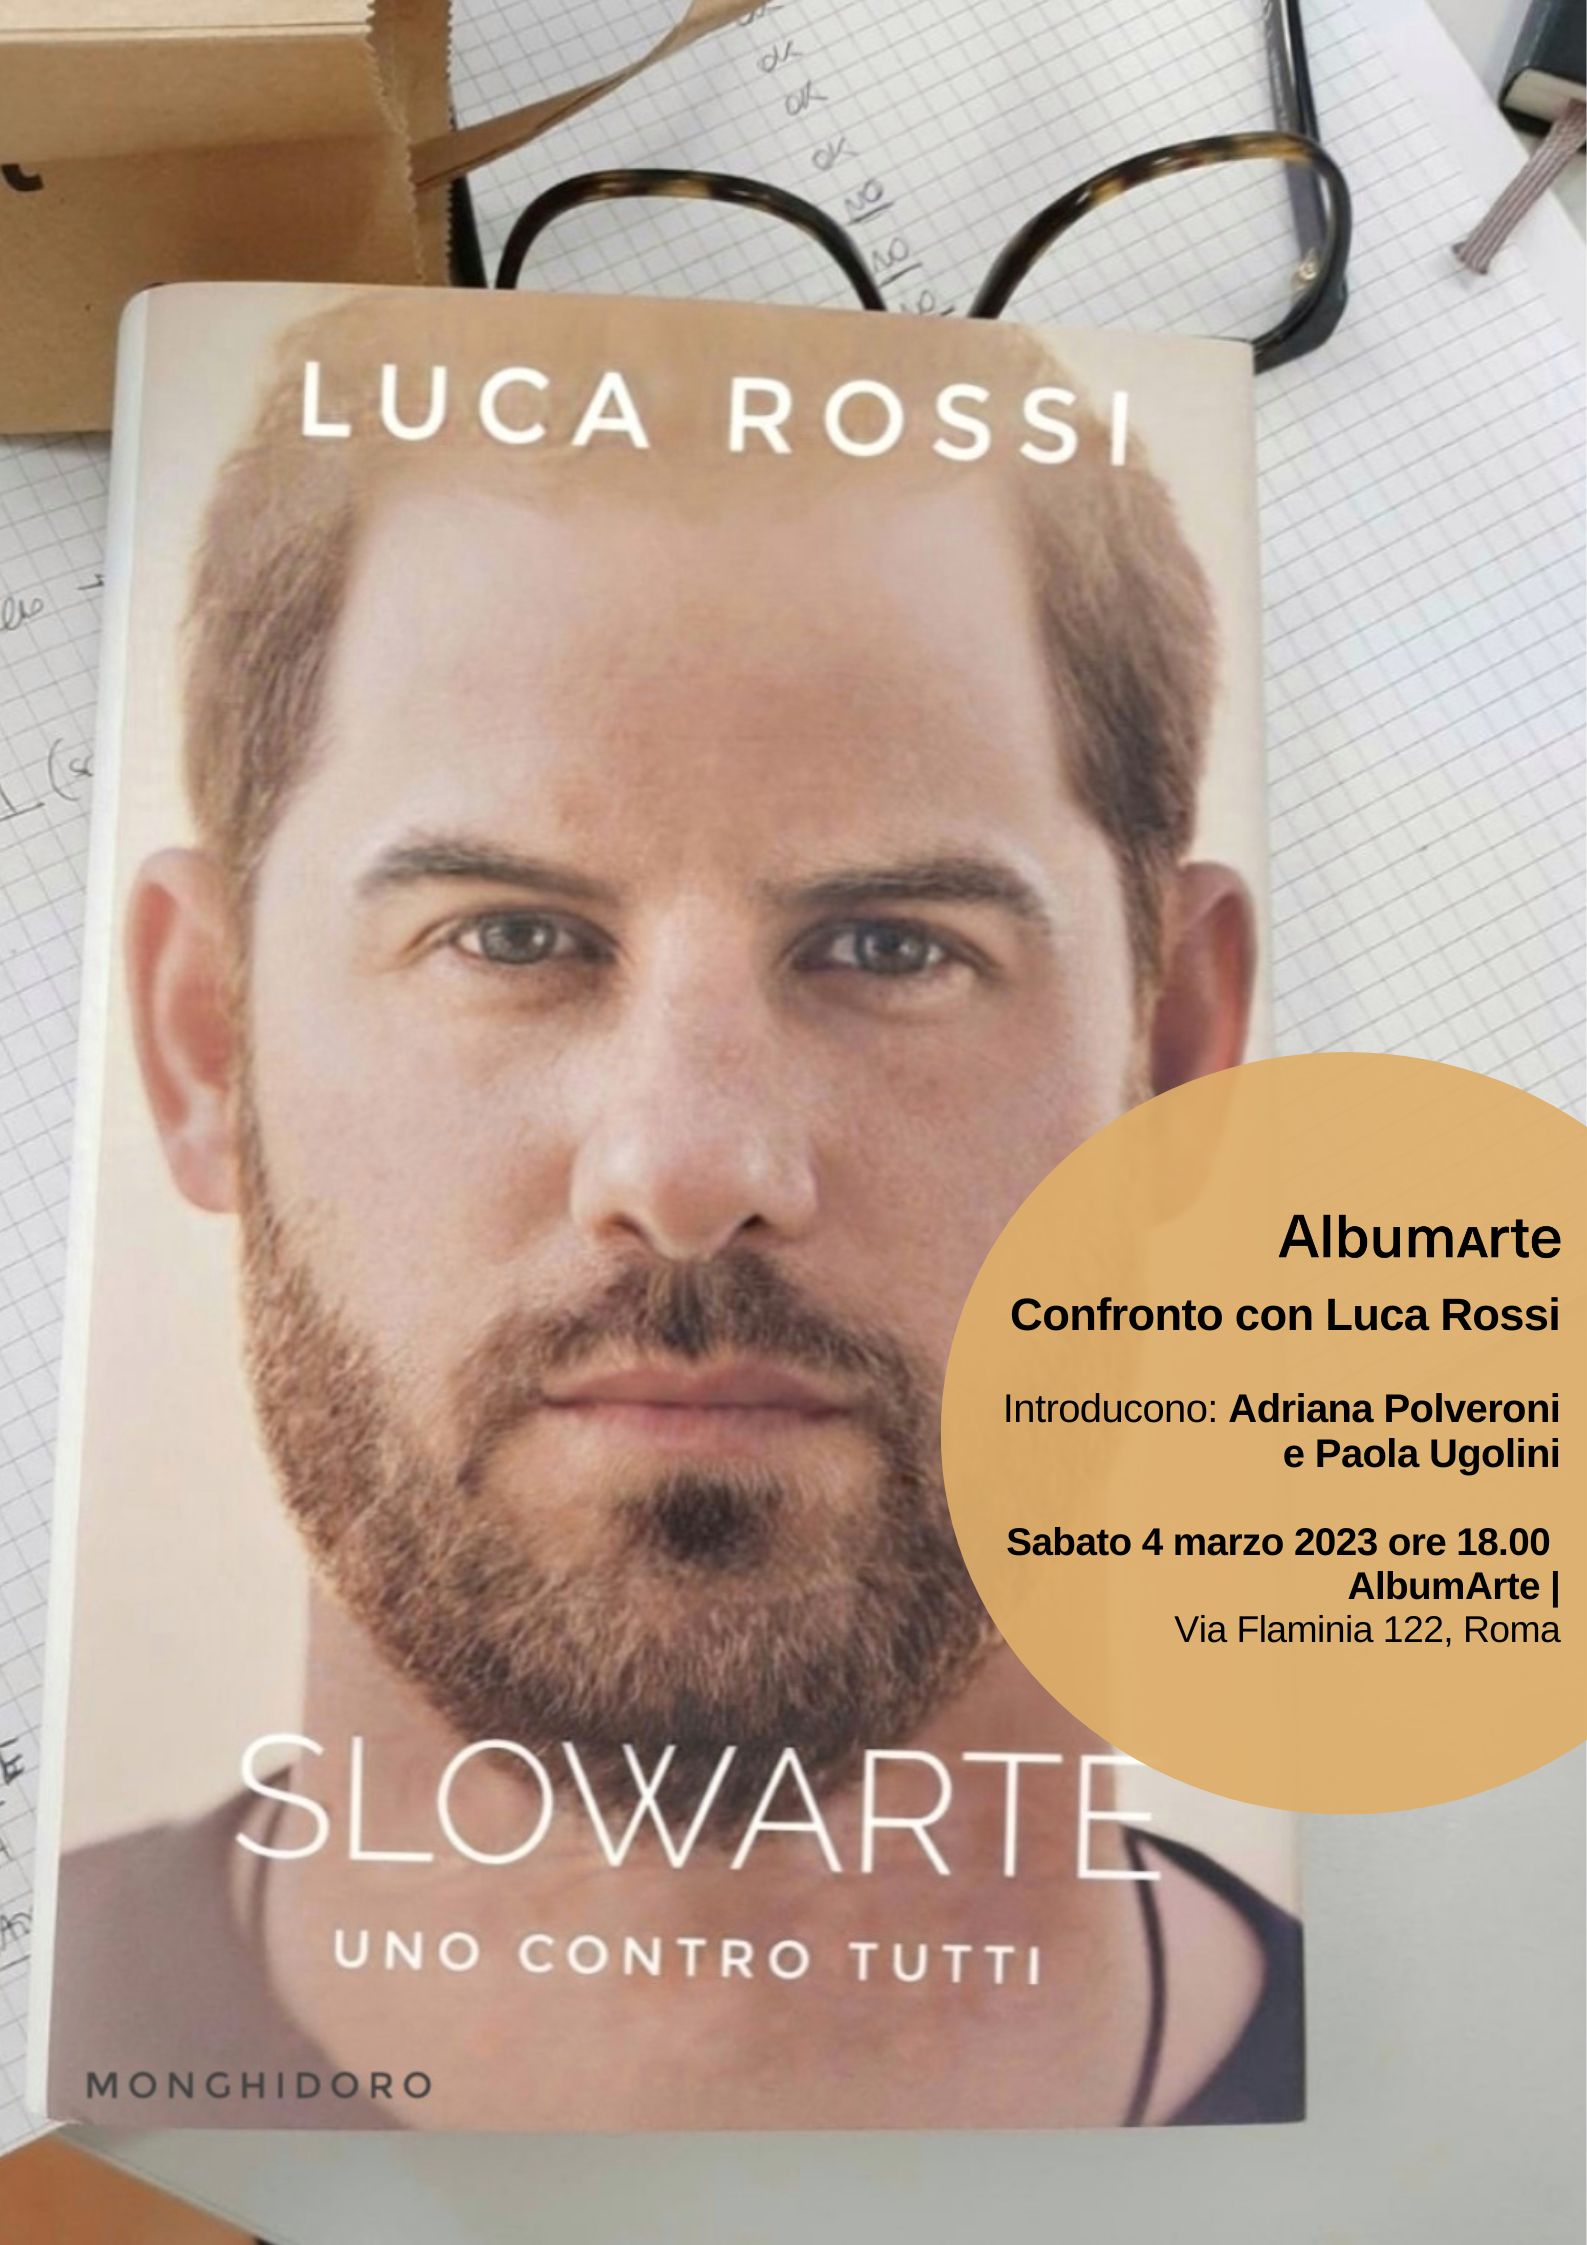 Luca Rossi - Slowarte. Uno contro tutti